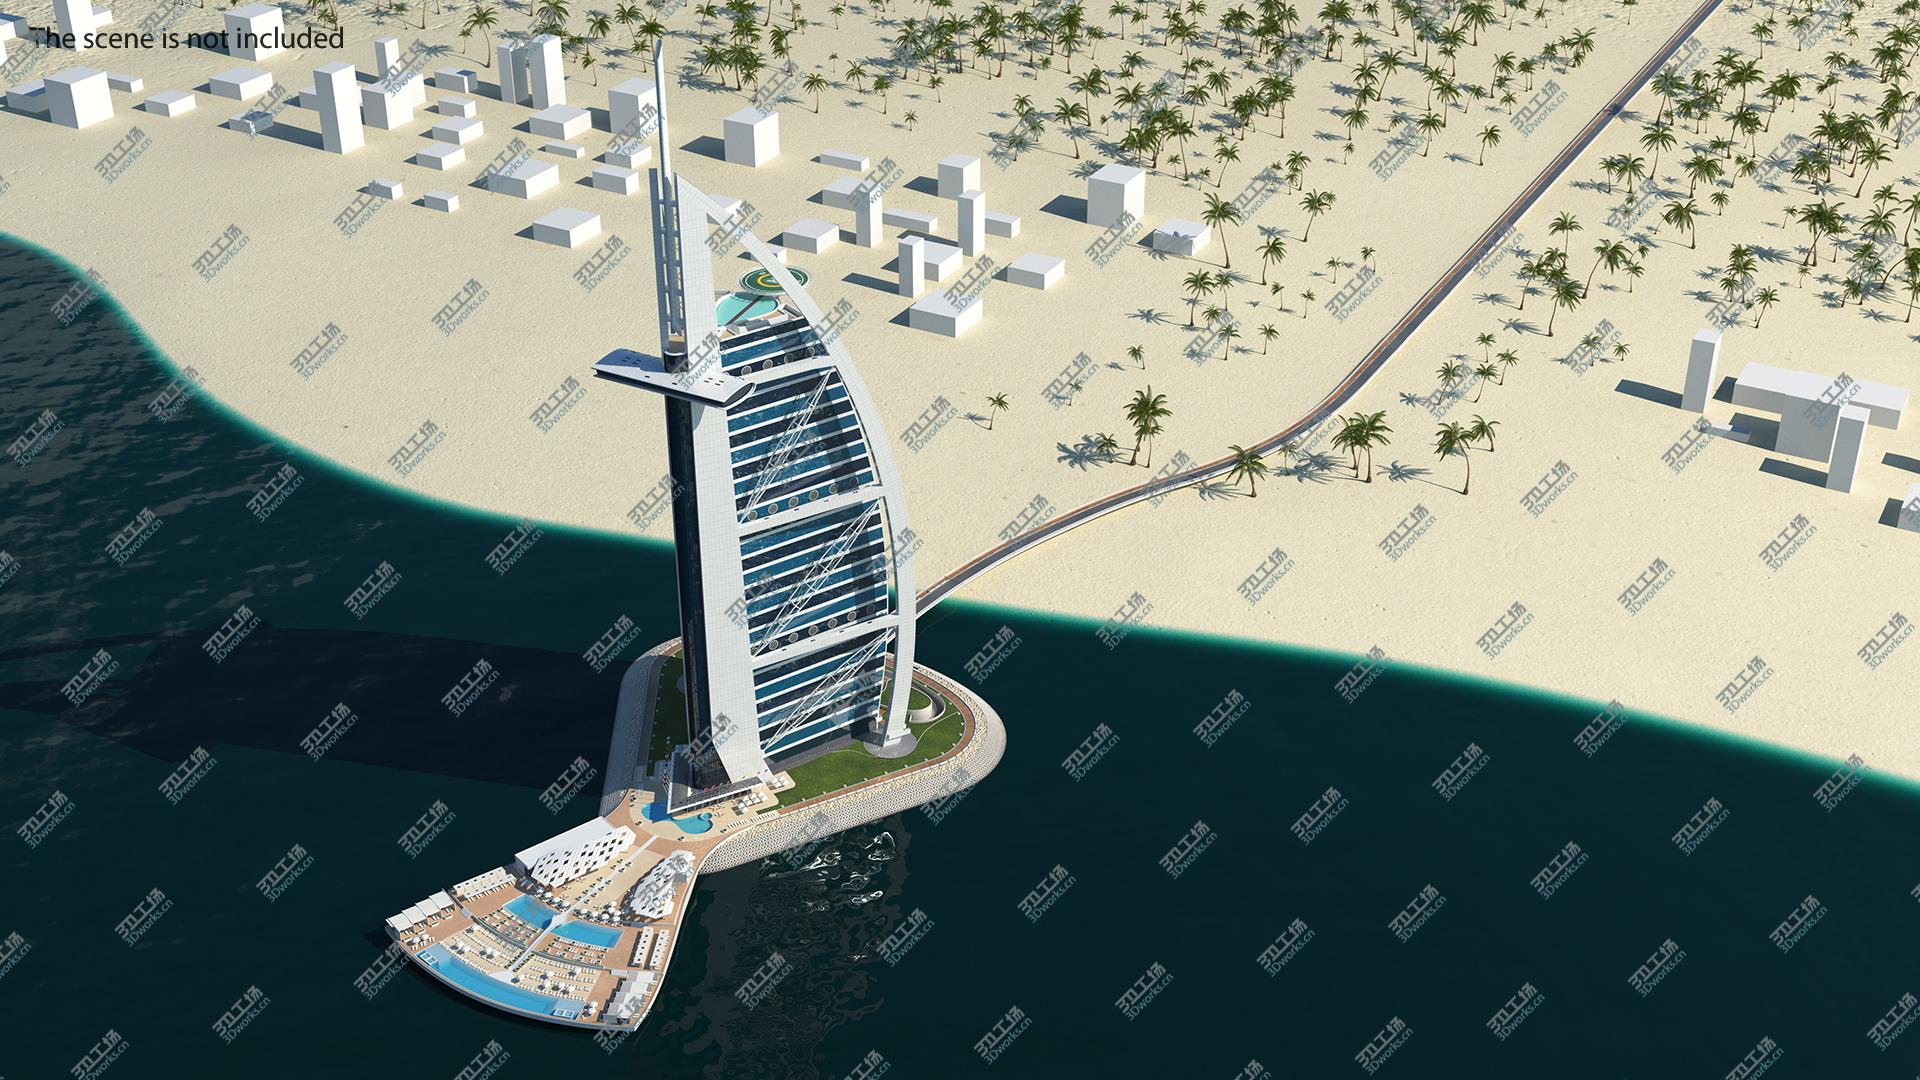 images/goods_img/202104092/3D Burj Al Arab Tower/1.jpg